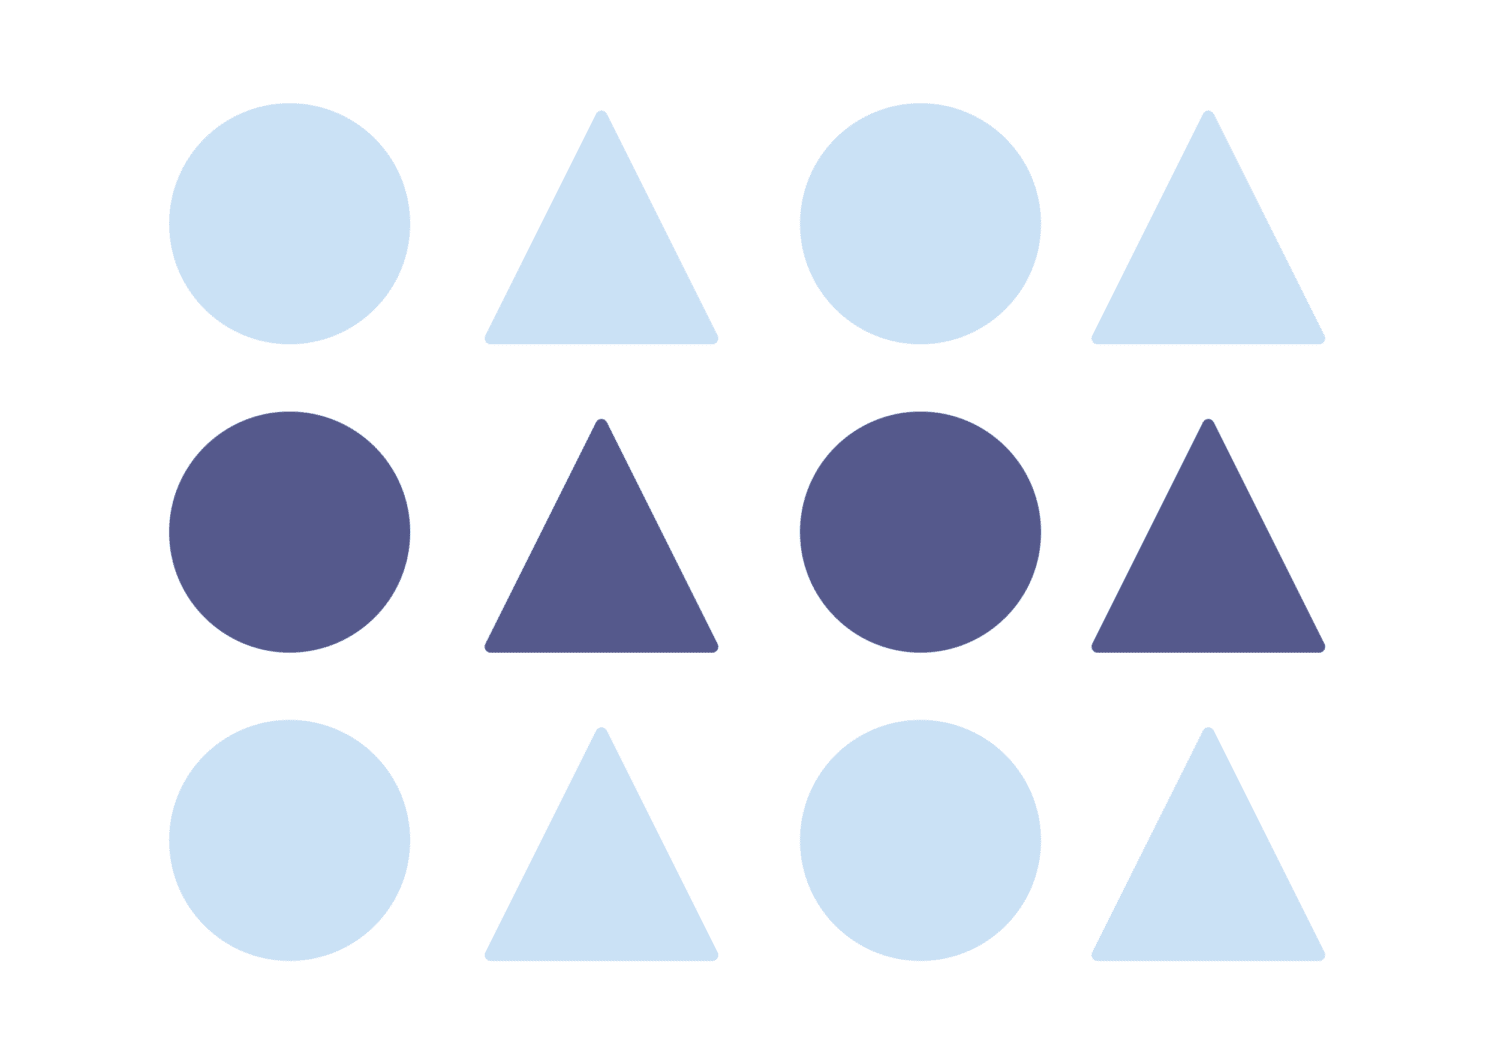 Gestaltprincipe Gelijkheid door middel van kleur. Lichtblauwe vormen en donkerblauwe vormen